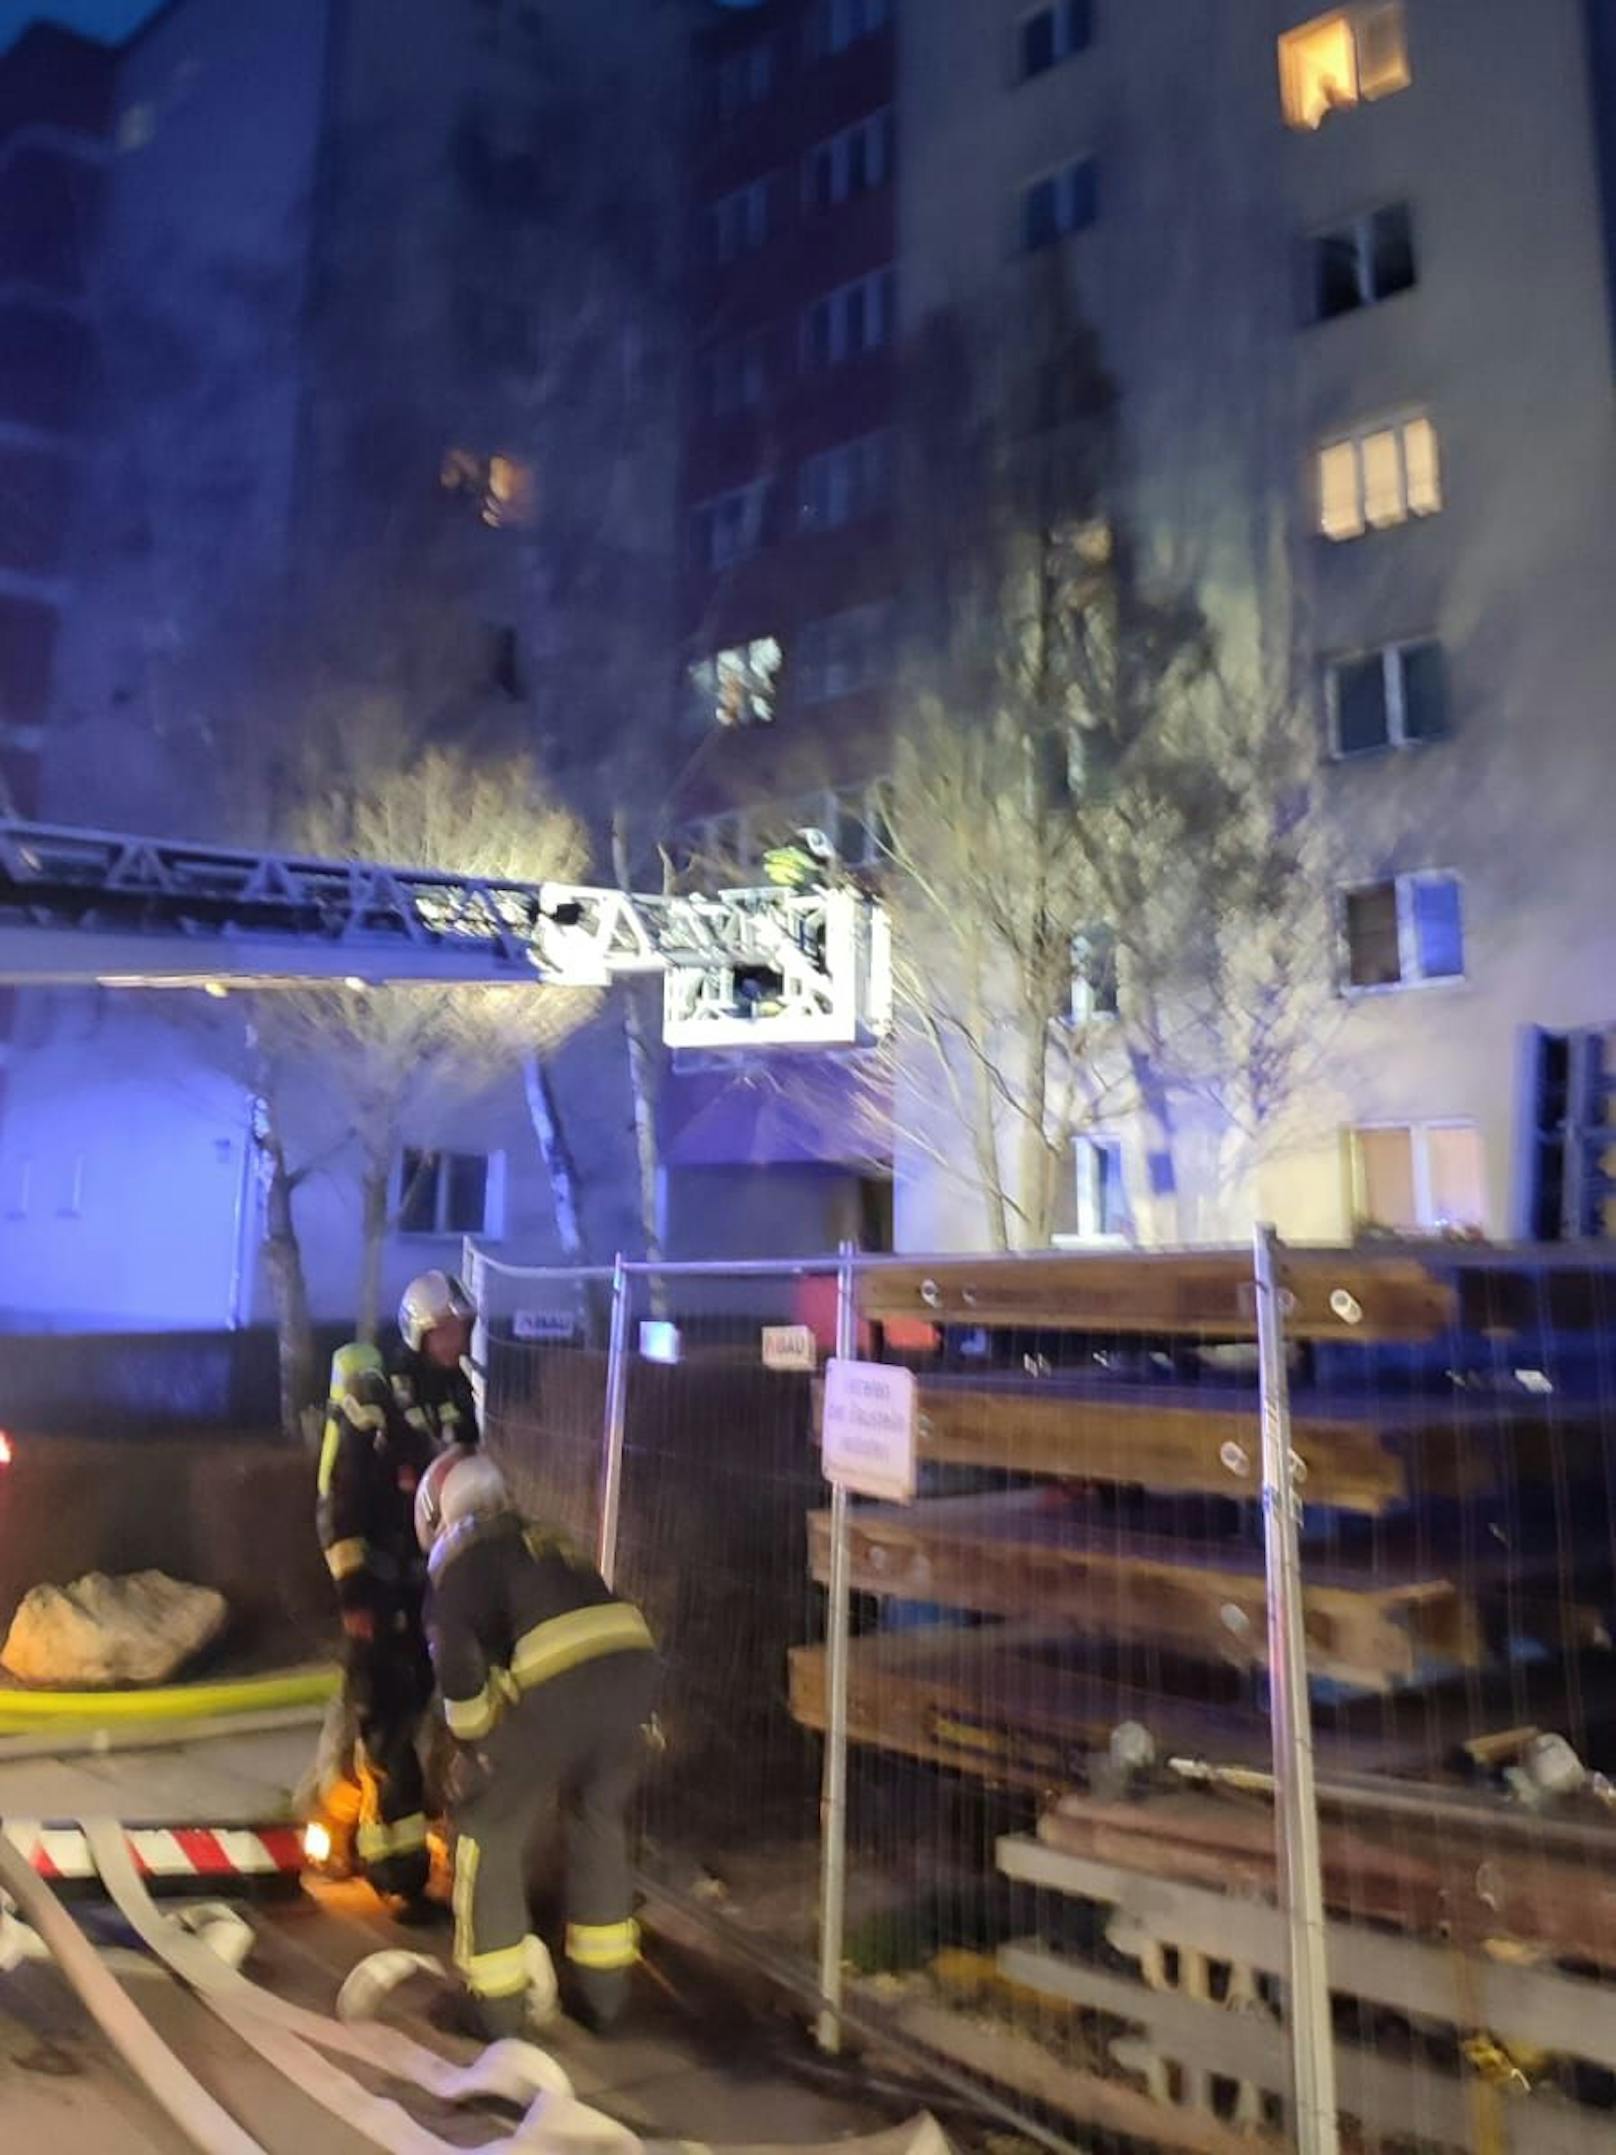 Am späten Nachmittag des 14. Jänner 2022 kam es in einem Gemeindebau in der Engerthstraße / Doktor-Natterer-Gasse zu einem verheerenden Wohnungsbrand.